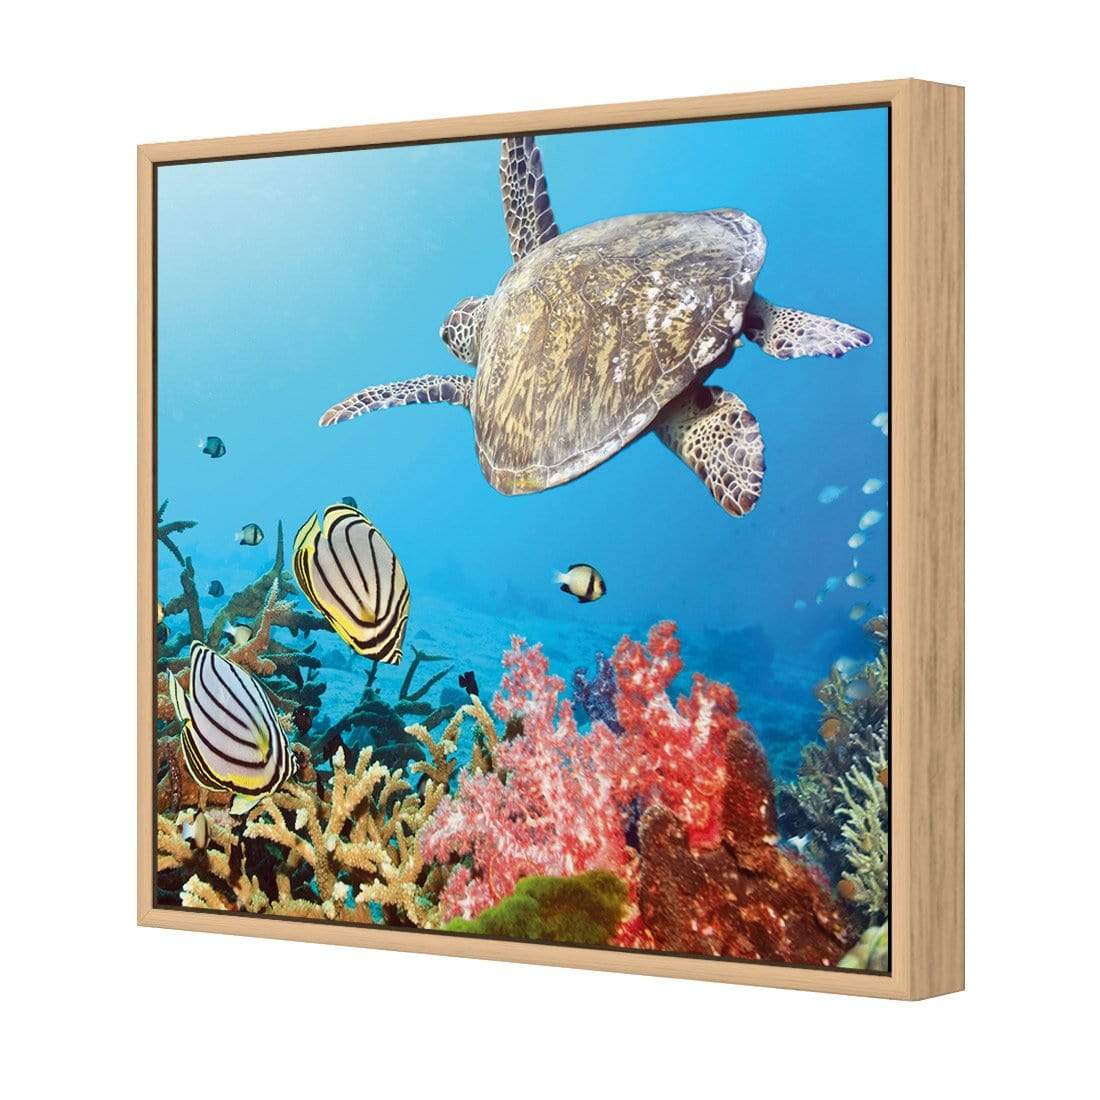 Coral Sea (square) - wallart-australia - Canvas